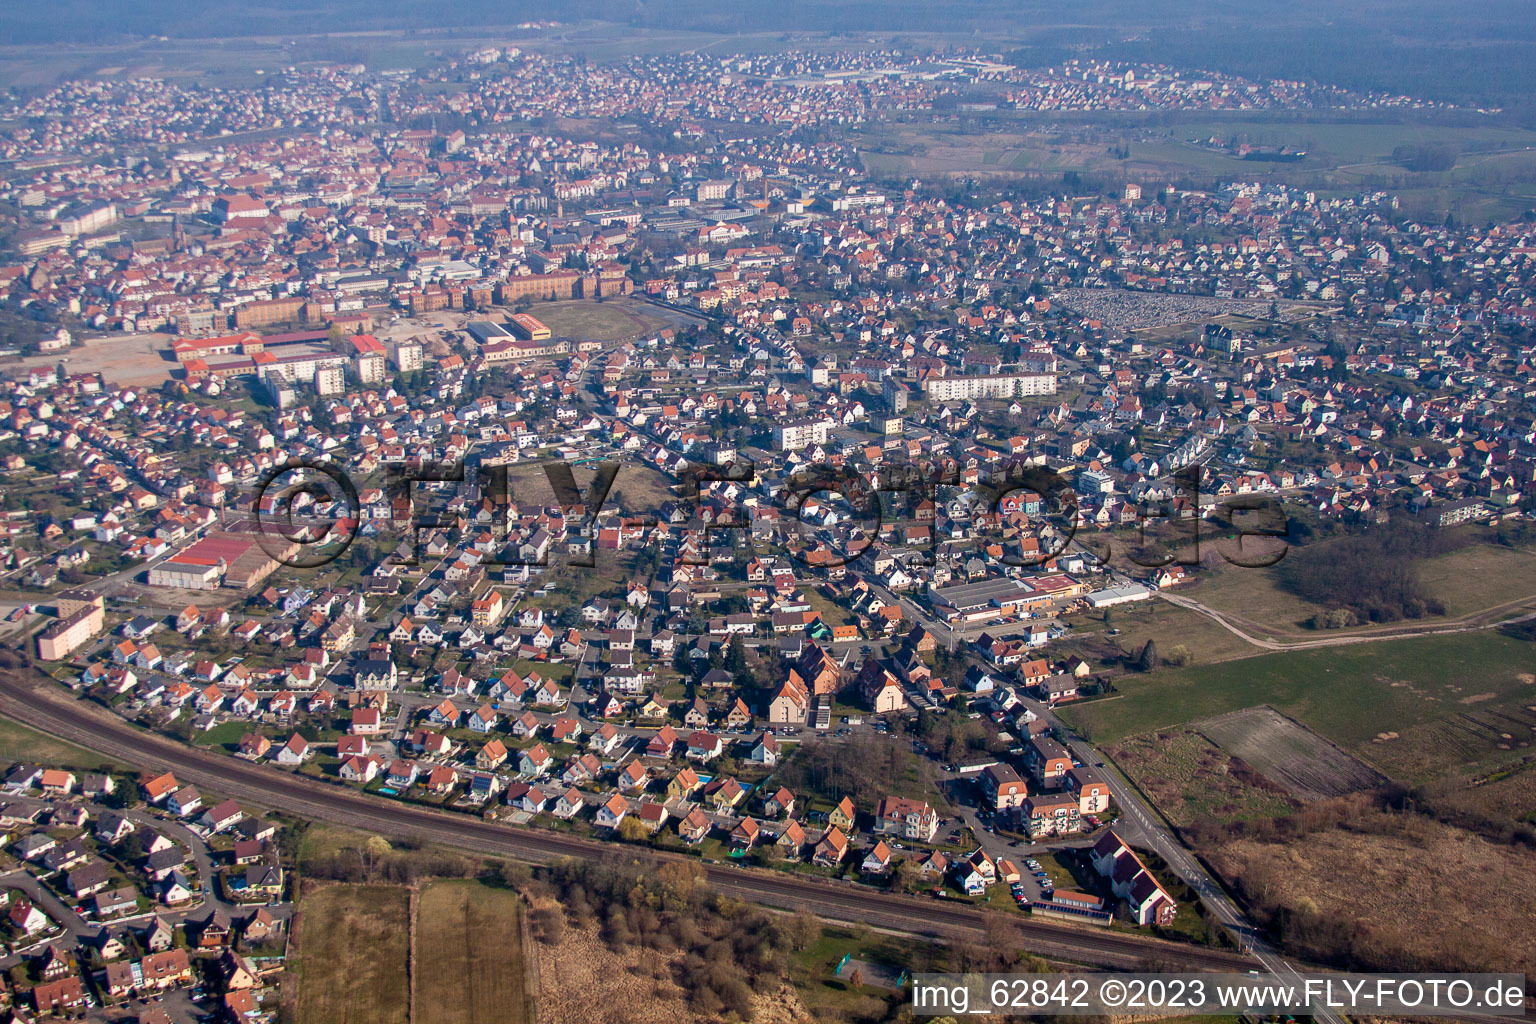 Haguenau im Bundesland Bas-Rhin, Frankreich von der Drohne aus gesehen